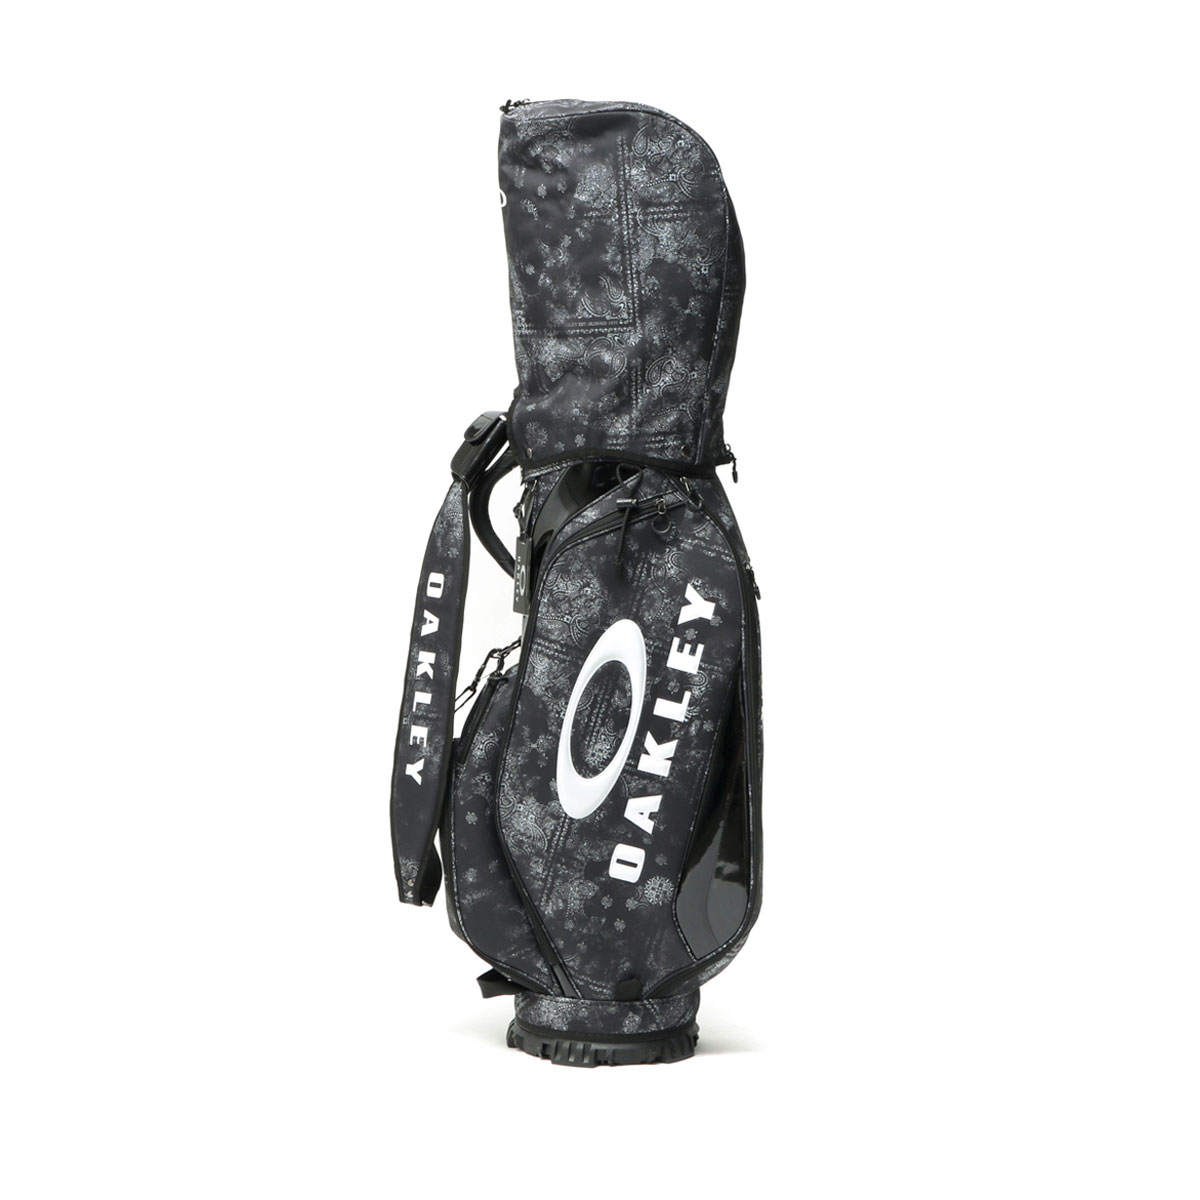 最大41%★3/29限定 日本正規品 オークリー キャディバッグ OAKLEY GOLF BAG 17.0 FW 9.5型 47インチ 5分割  カート式 ゴルフバッグ メンズ レディース FOS901534